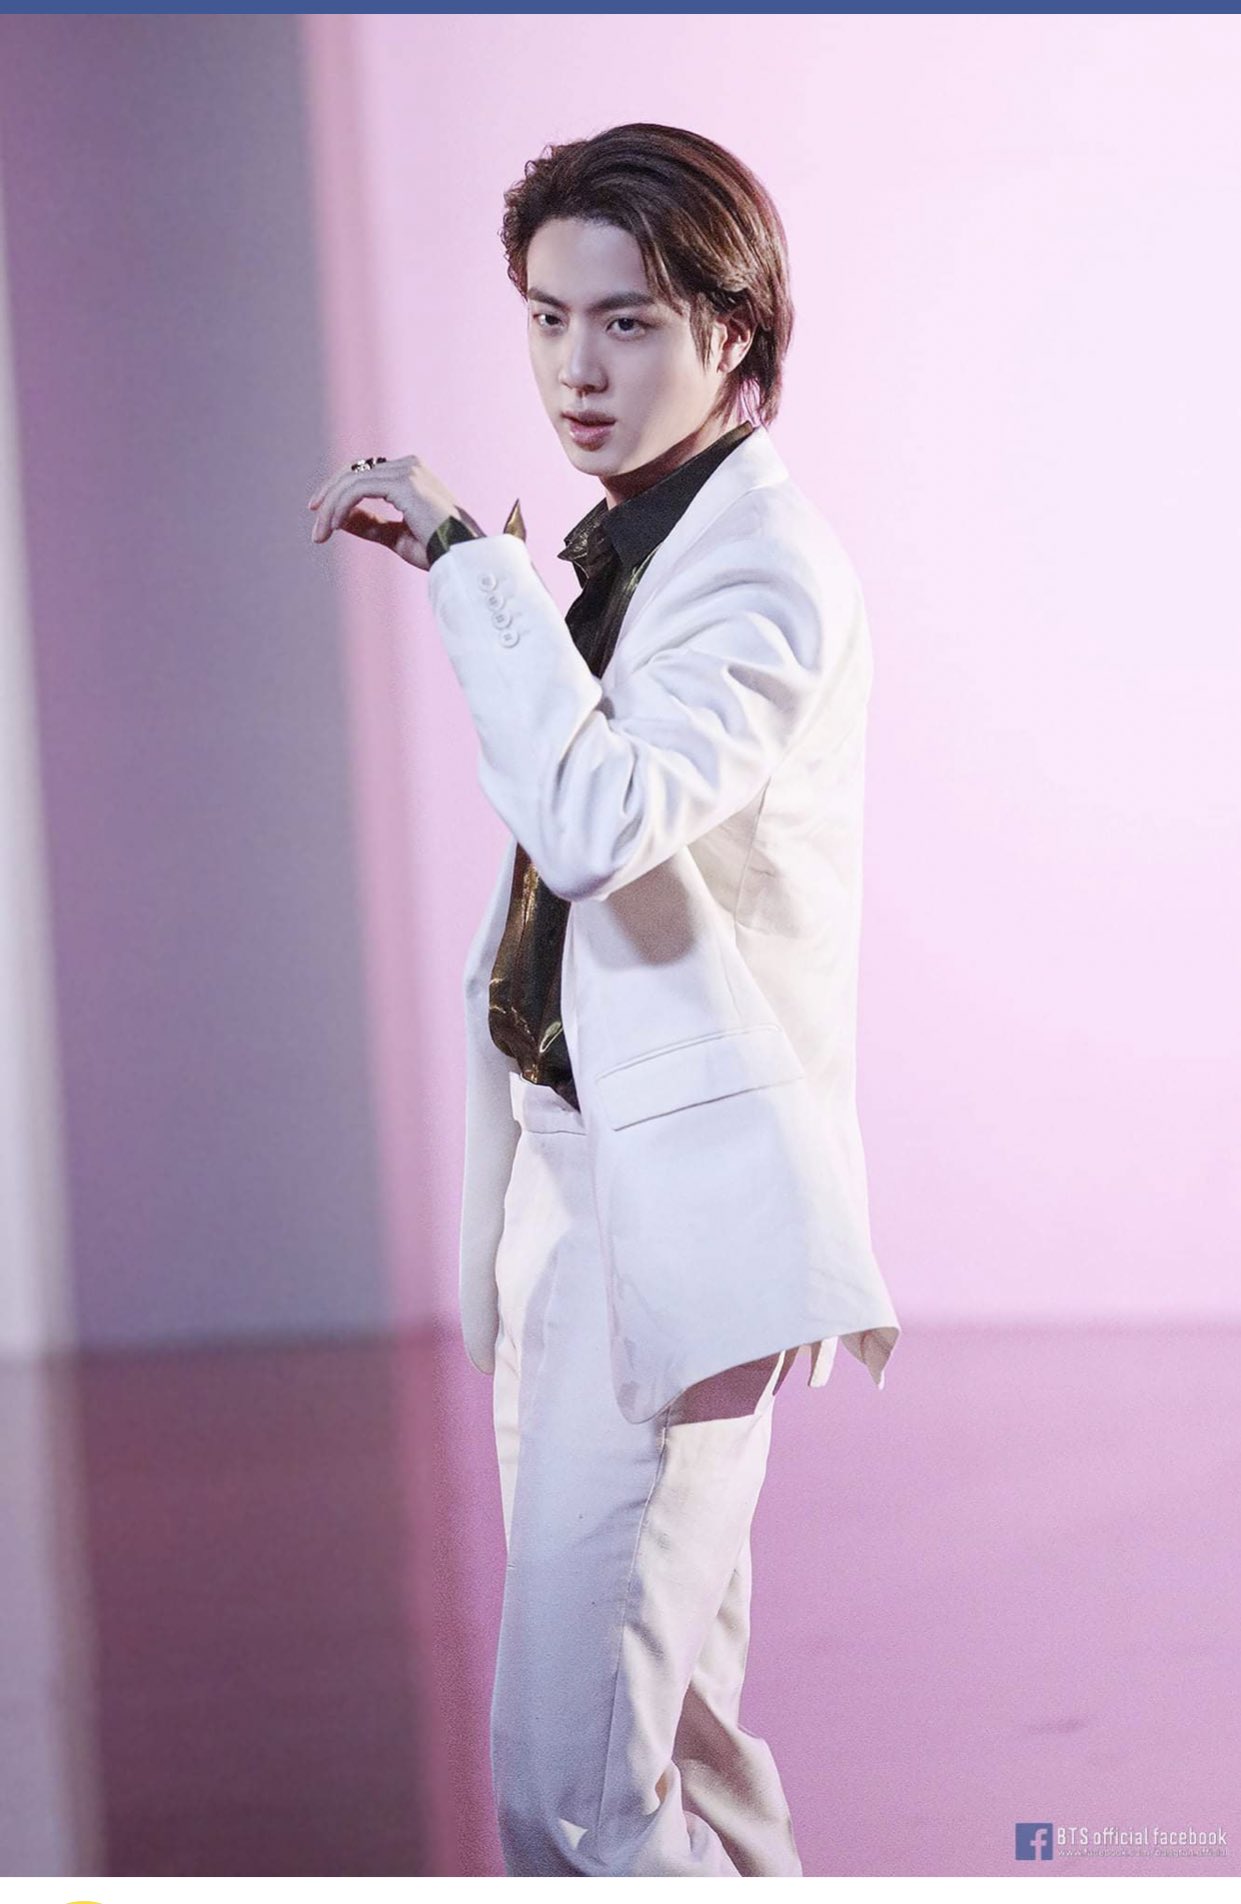 BTS Kim Seokjin - Jin in white suit be looking like a